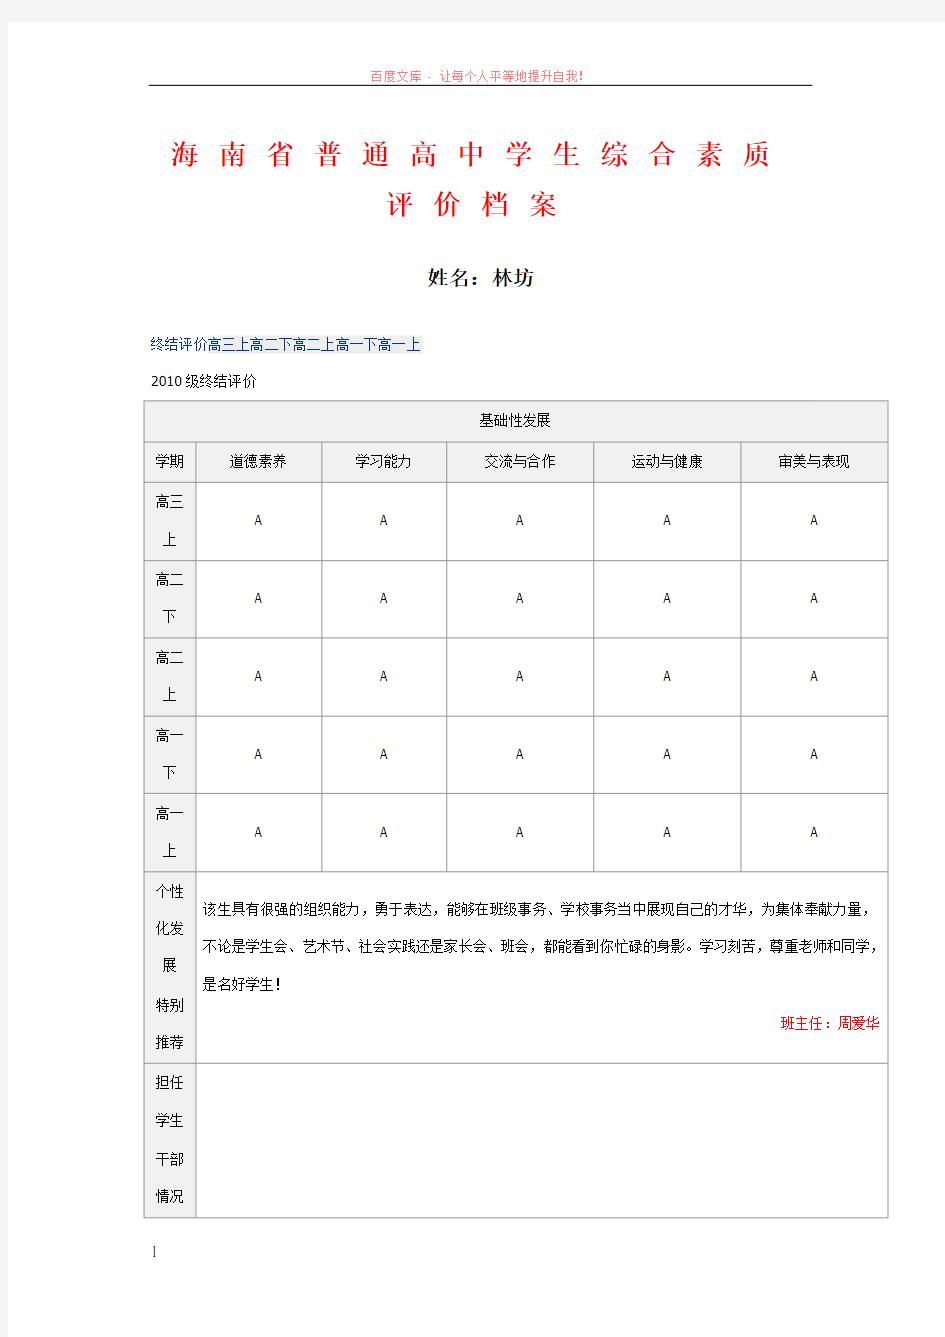 海南省普通高中学生综合素质评价档案 (1)